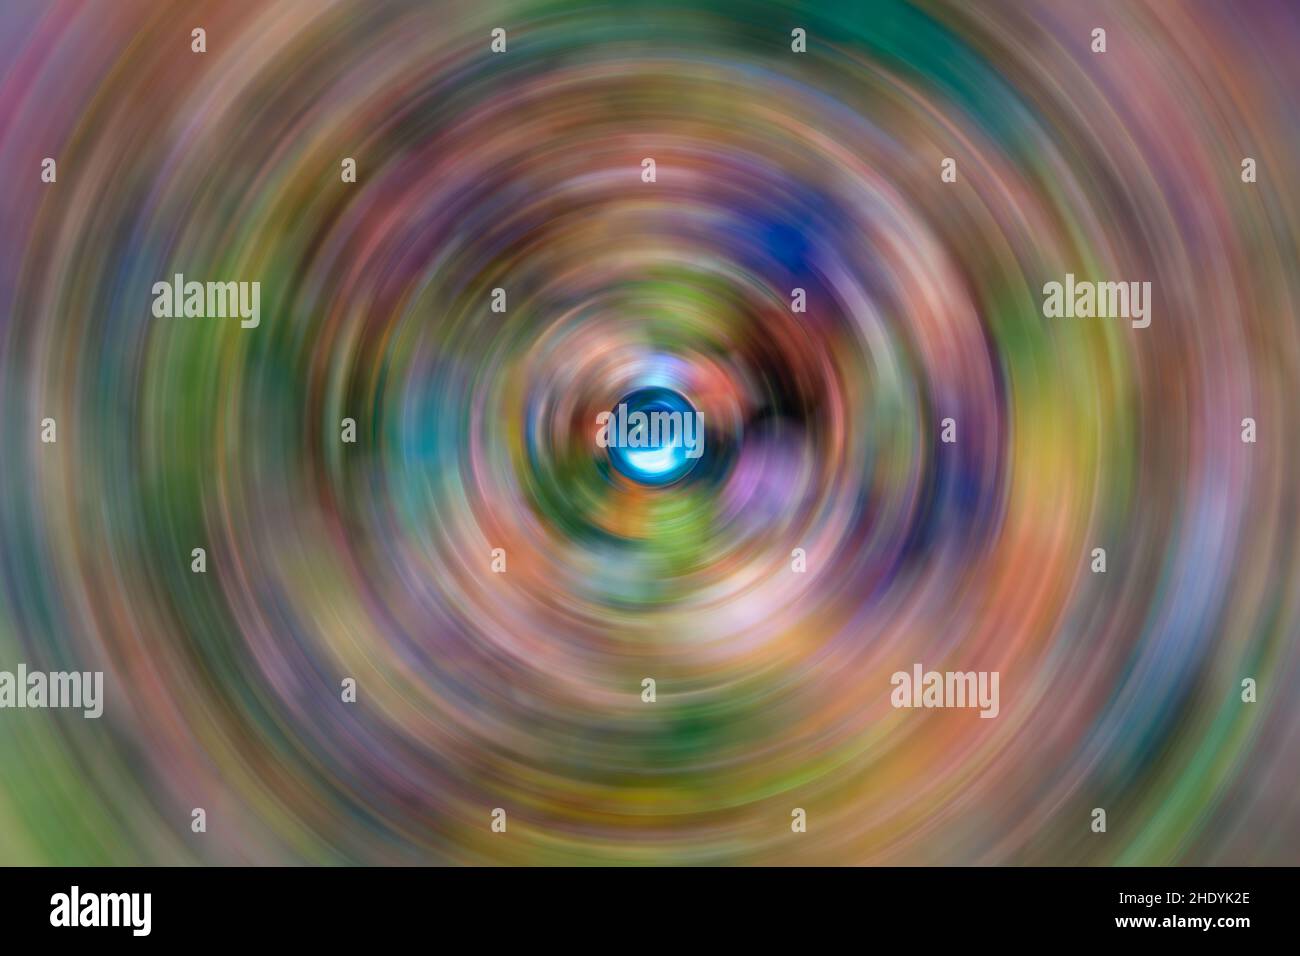 Imagen de fondo en color abstracto con canicas borrosas en espiral de enfoque suave Foto de stock